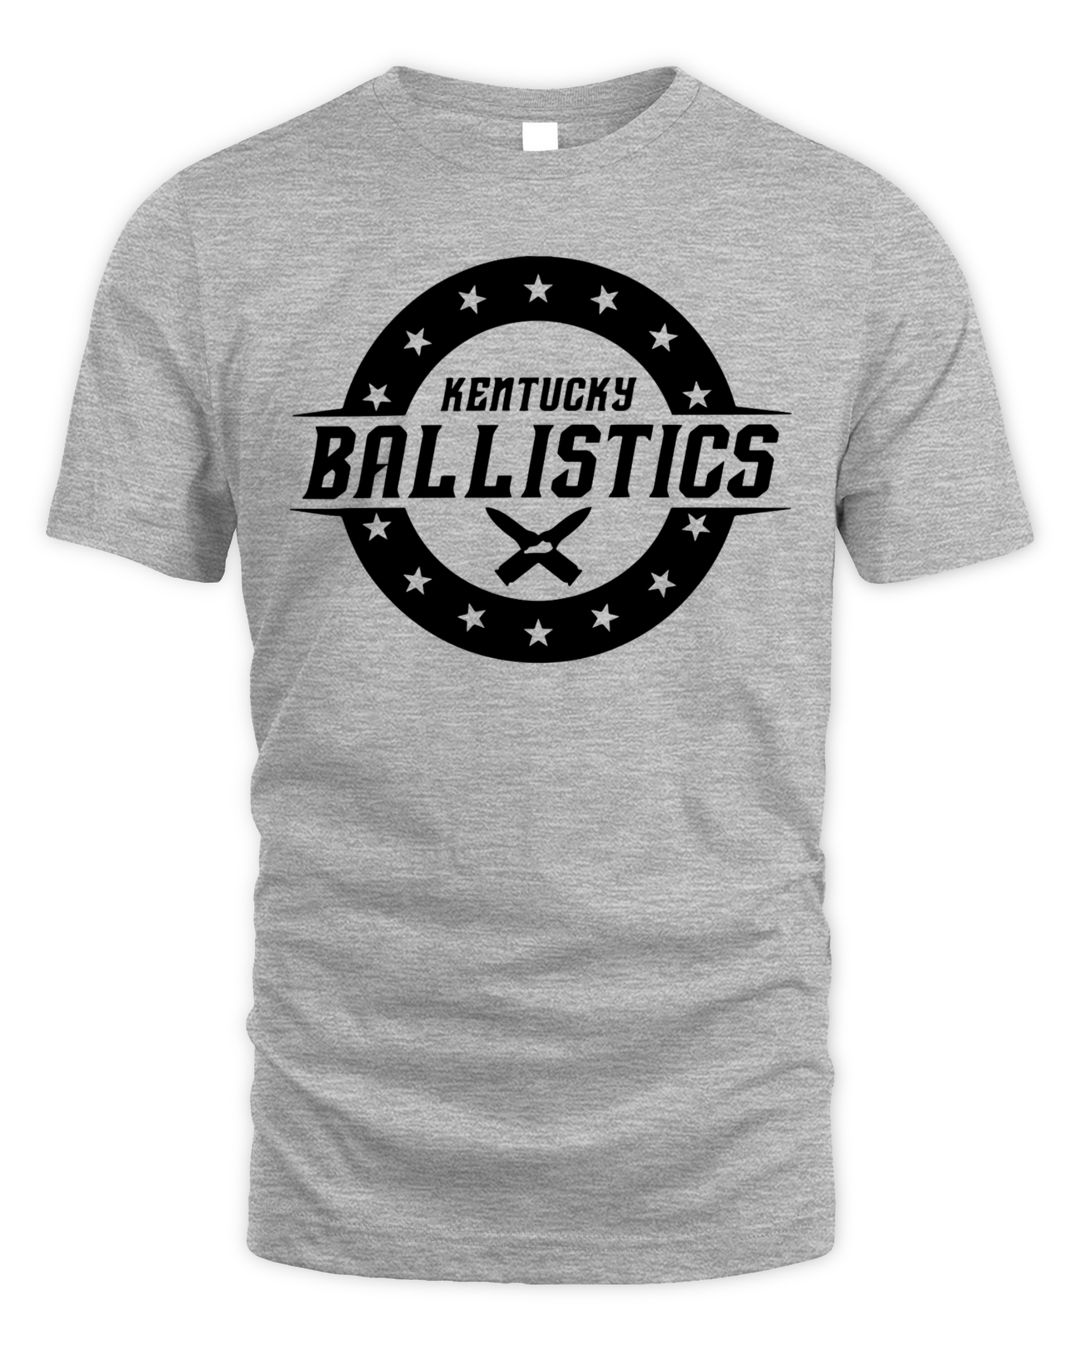 Kentucky Ballistics Merch Kb Logo Shirt